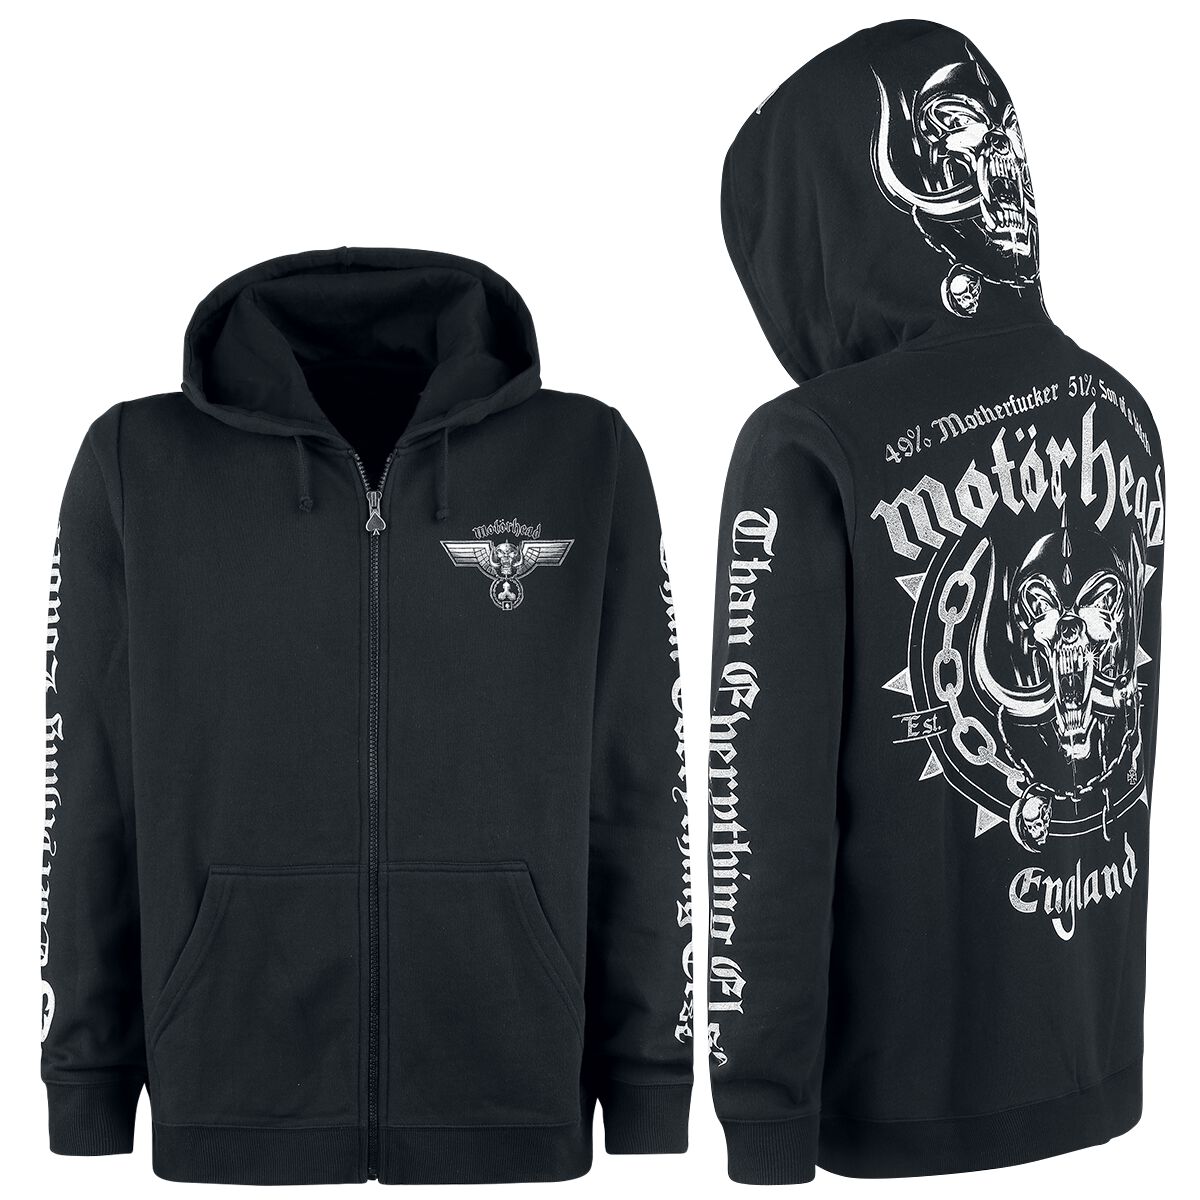 Motörhead Kapuzenjacke - England - M bis 3XL - für Männer - Größe M - schwarz  - EMP exklusives Merchandise!